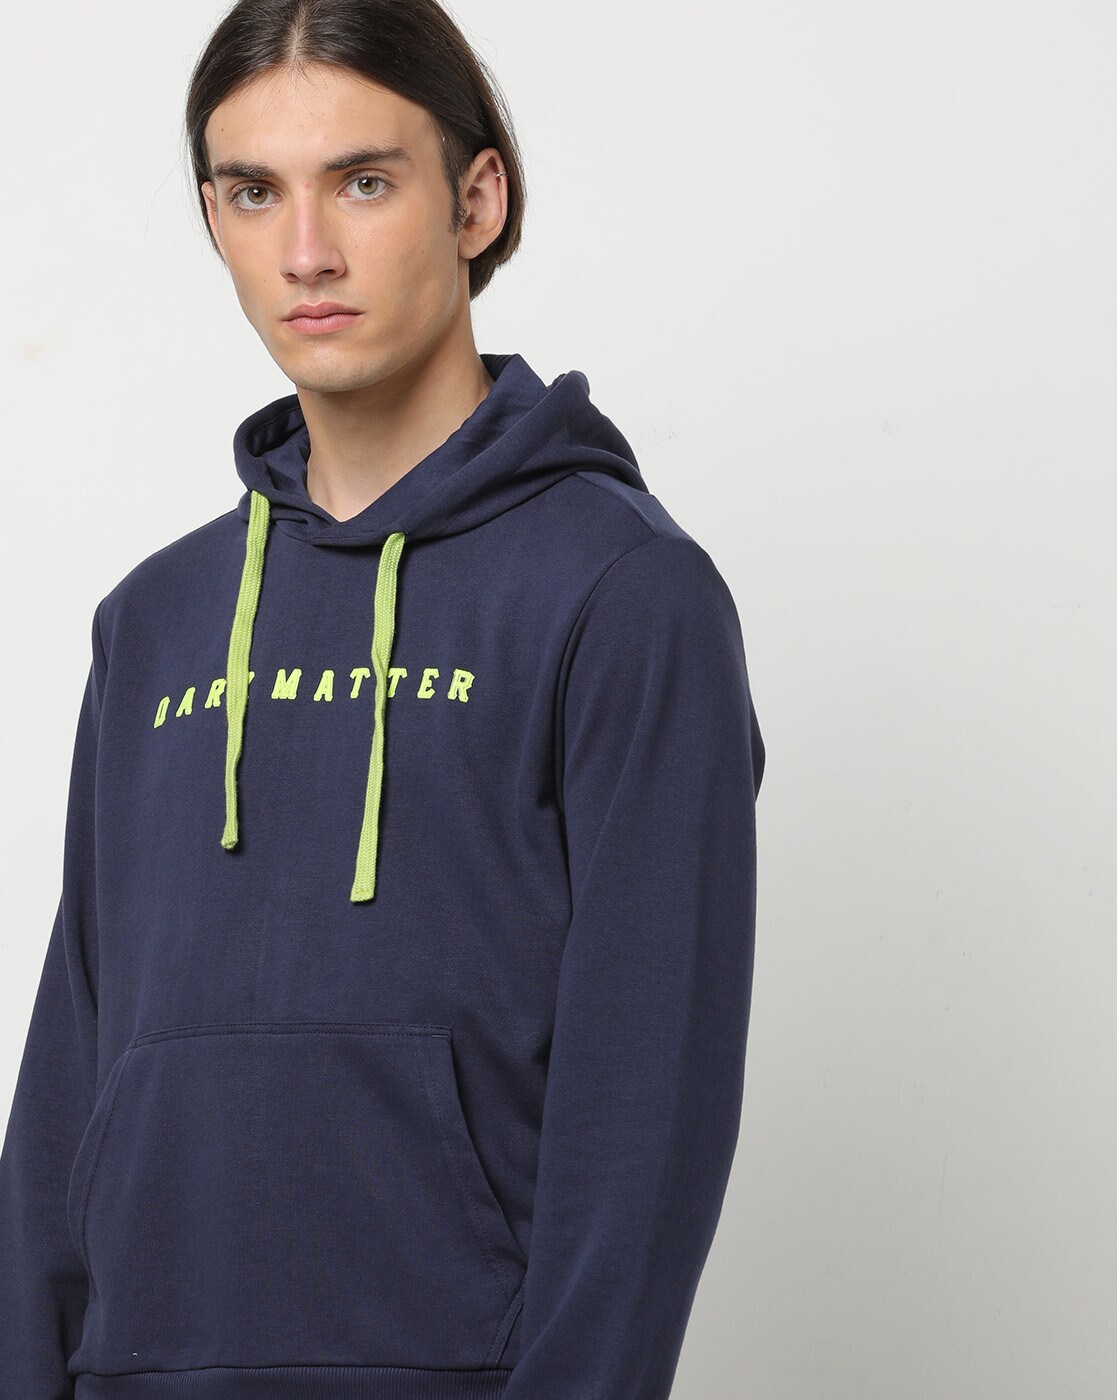 hoodies for men under 700